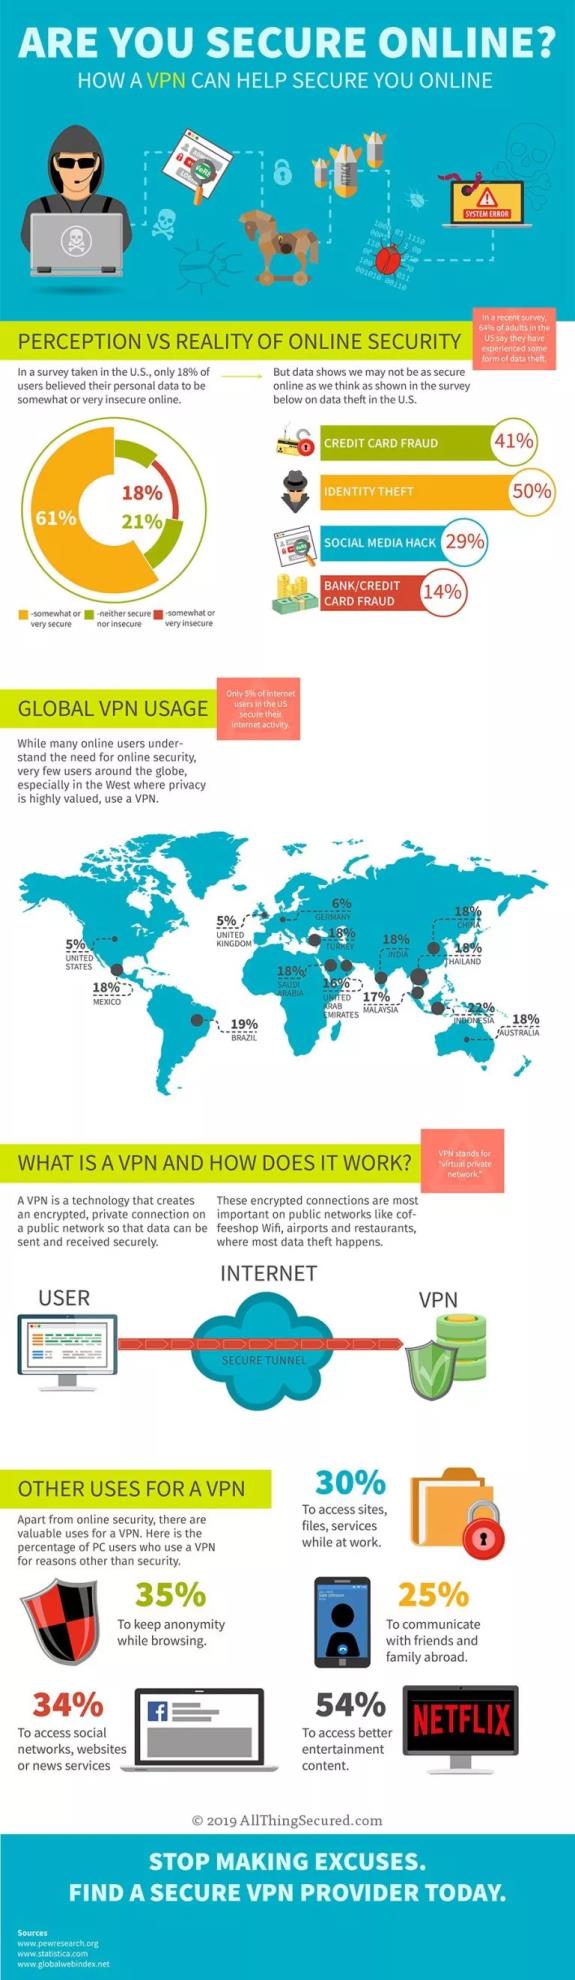 VPN Benefits